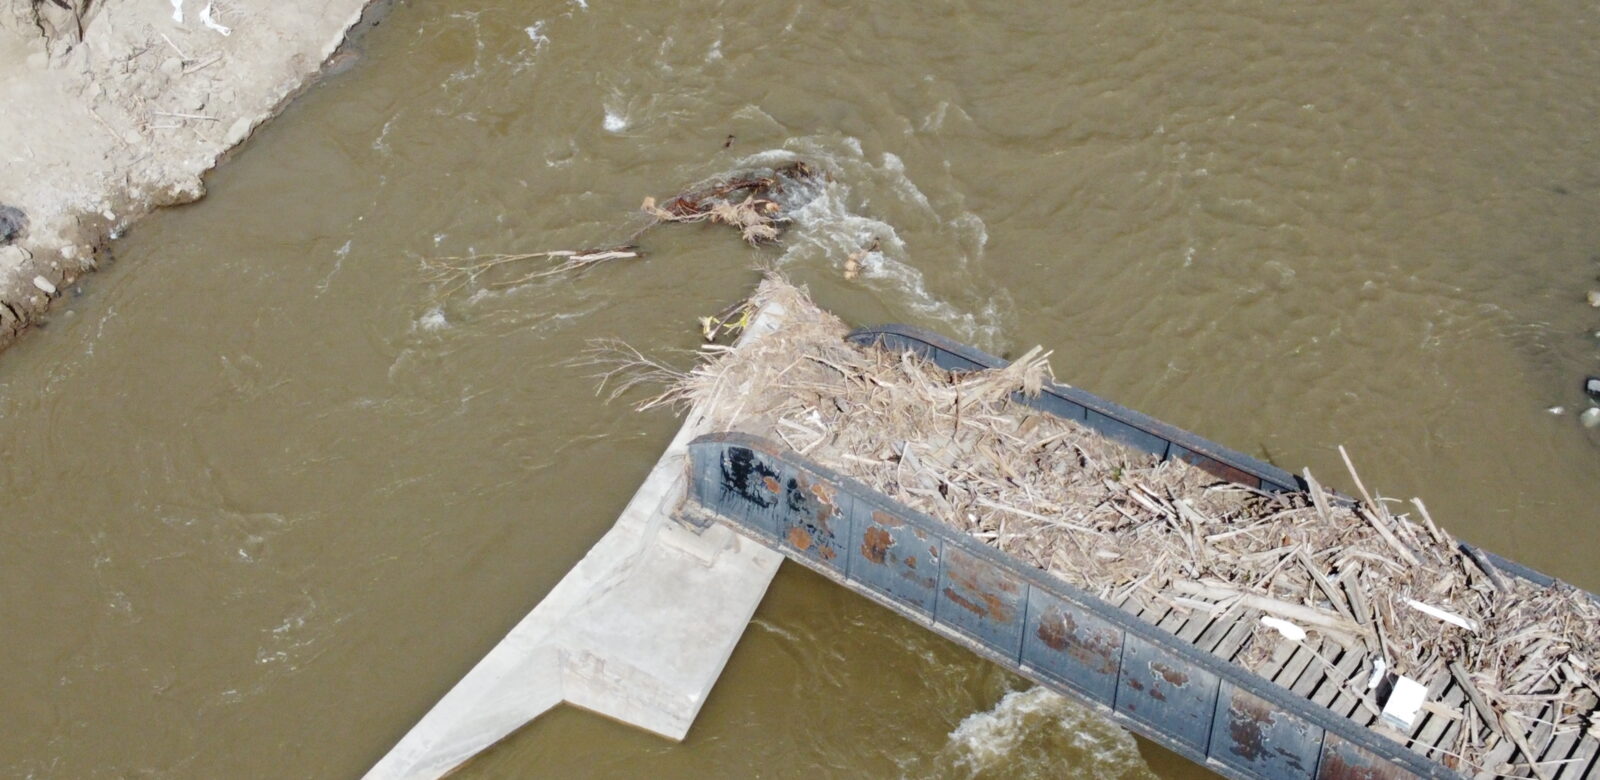 BC River Debris Removal Program